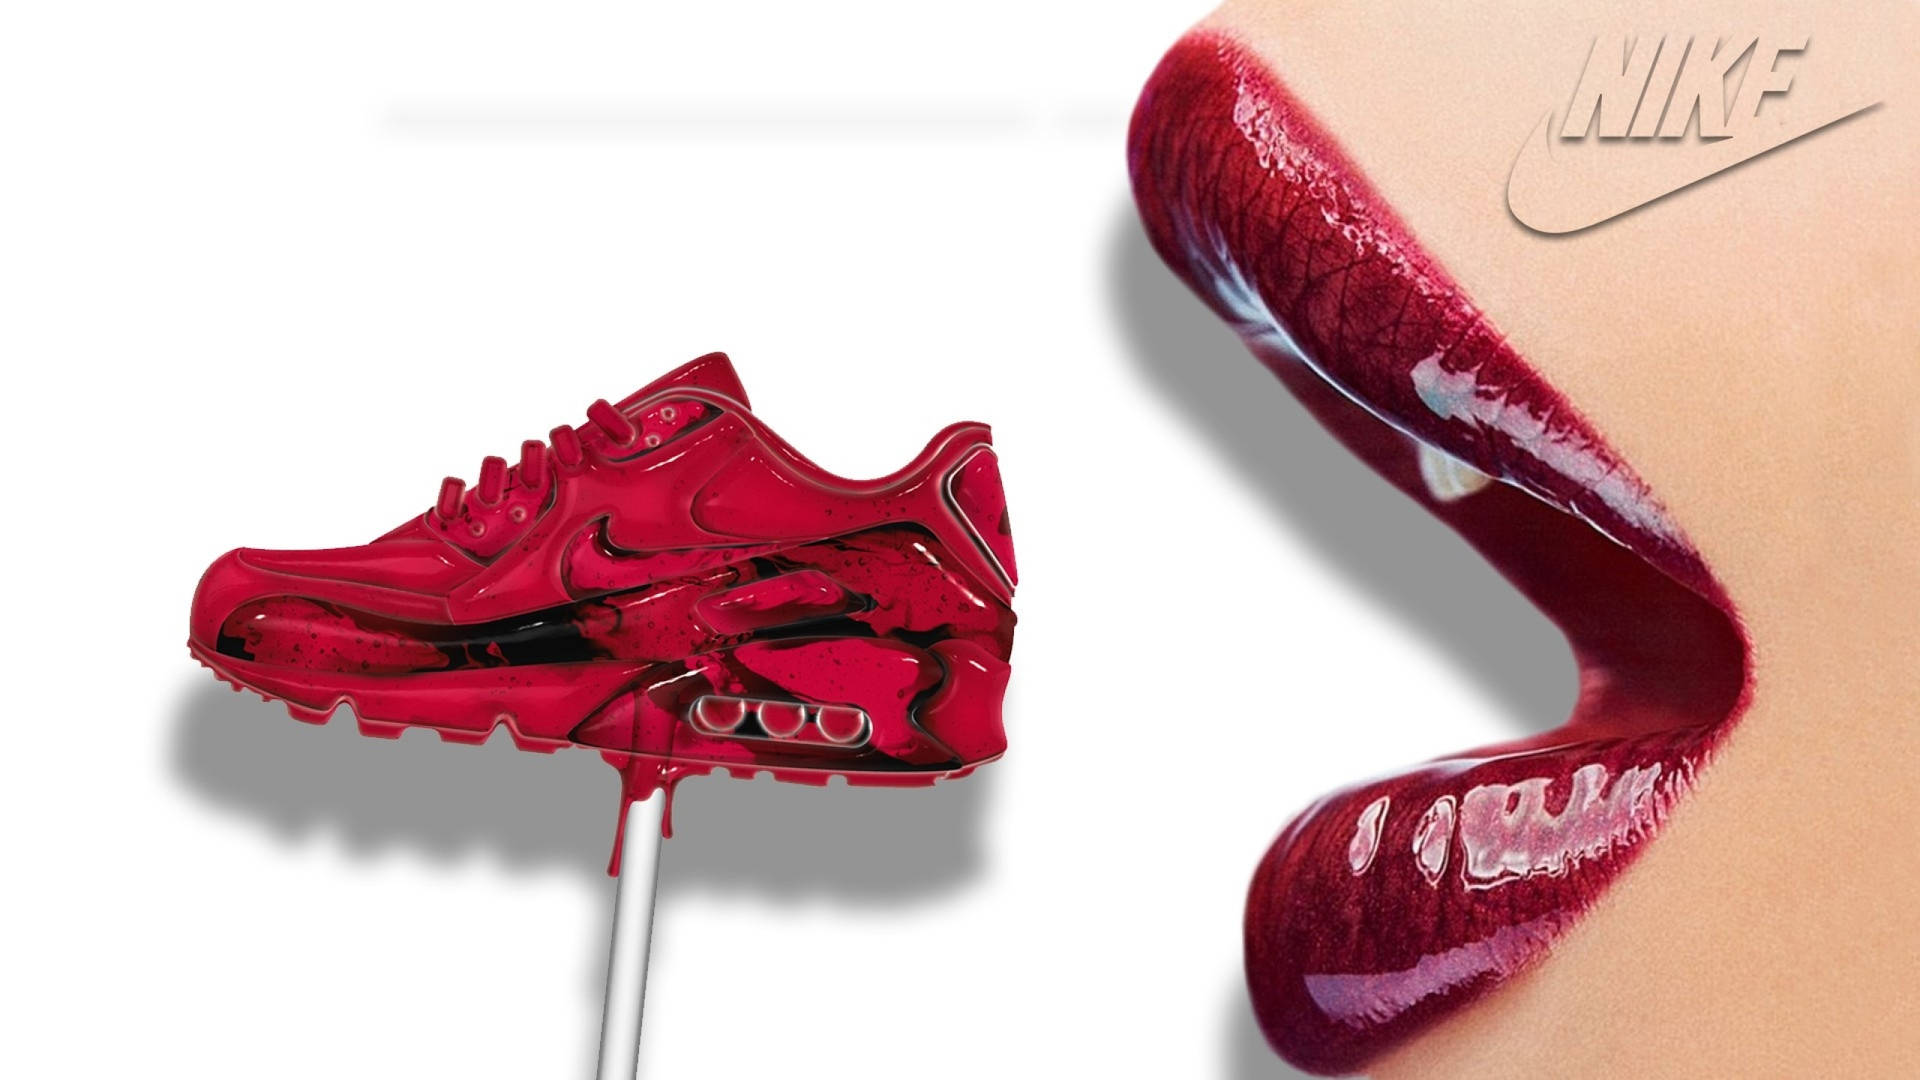 Nike Girl Lips With Lollipop Shoe Wallpaper